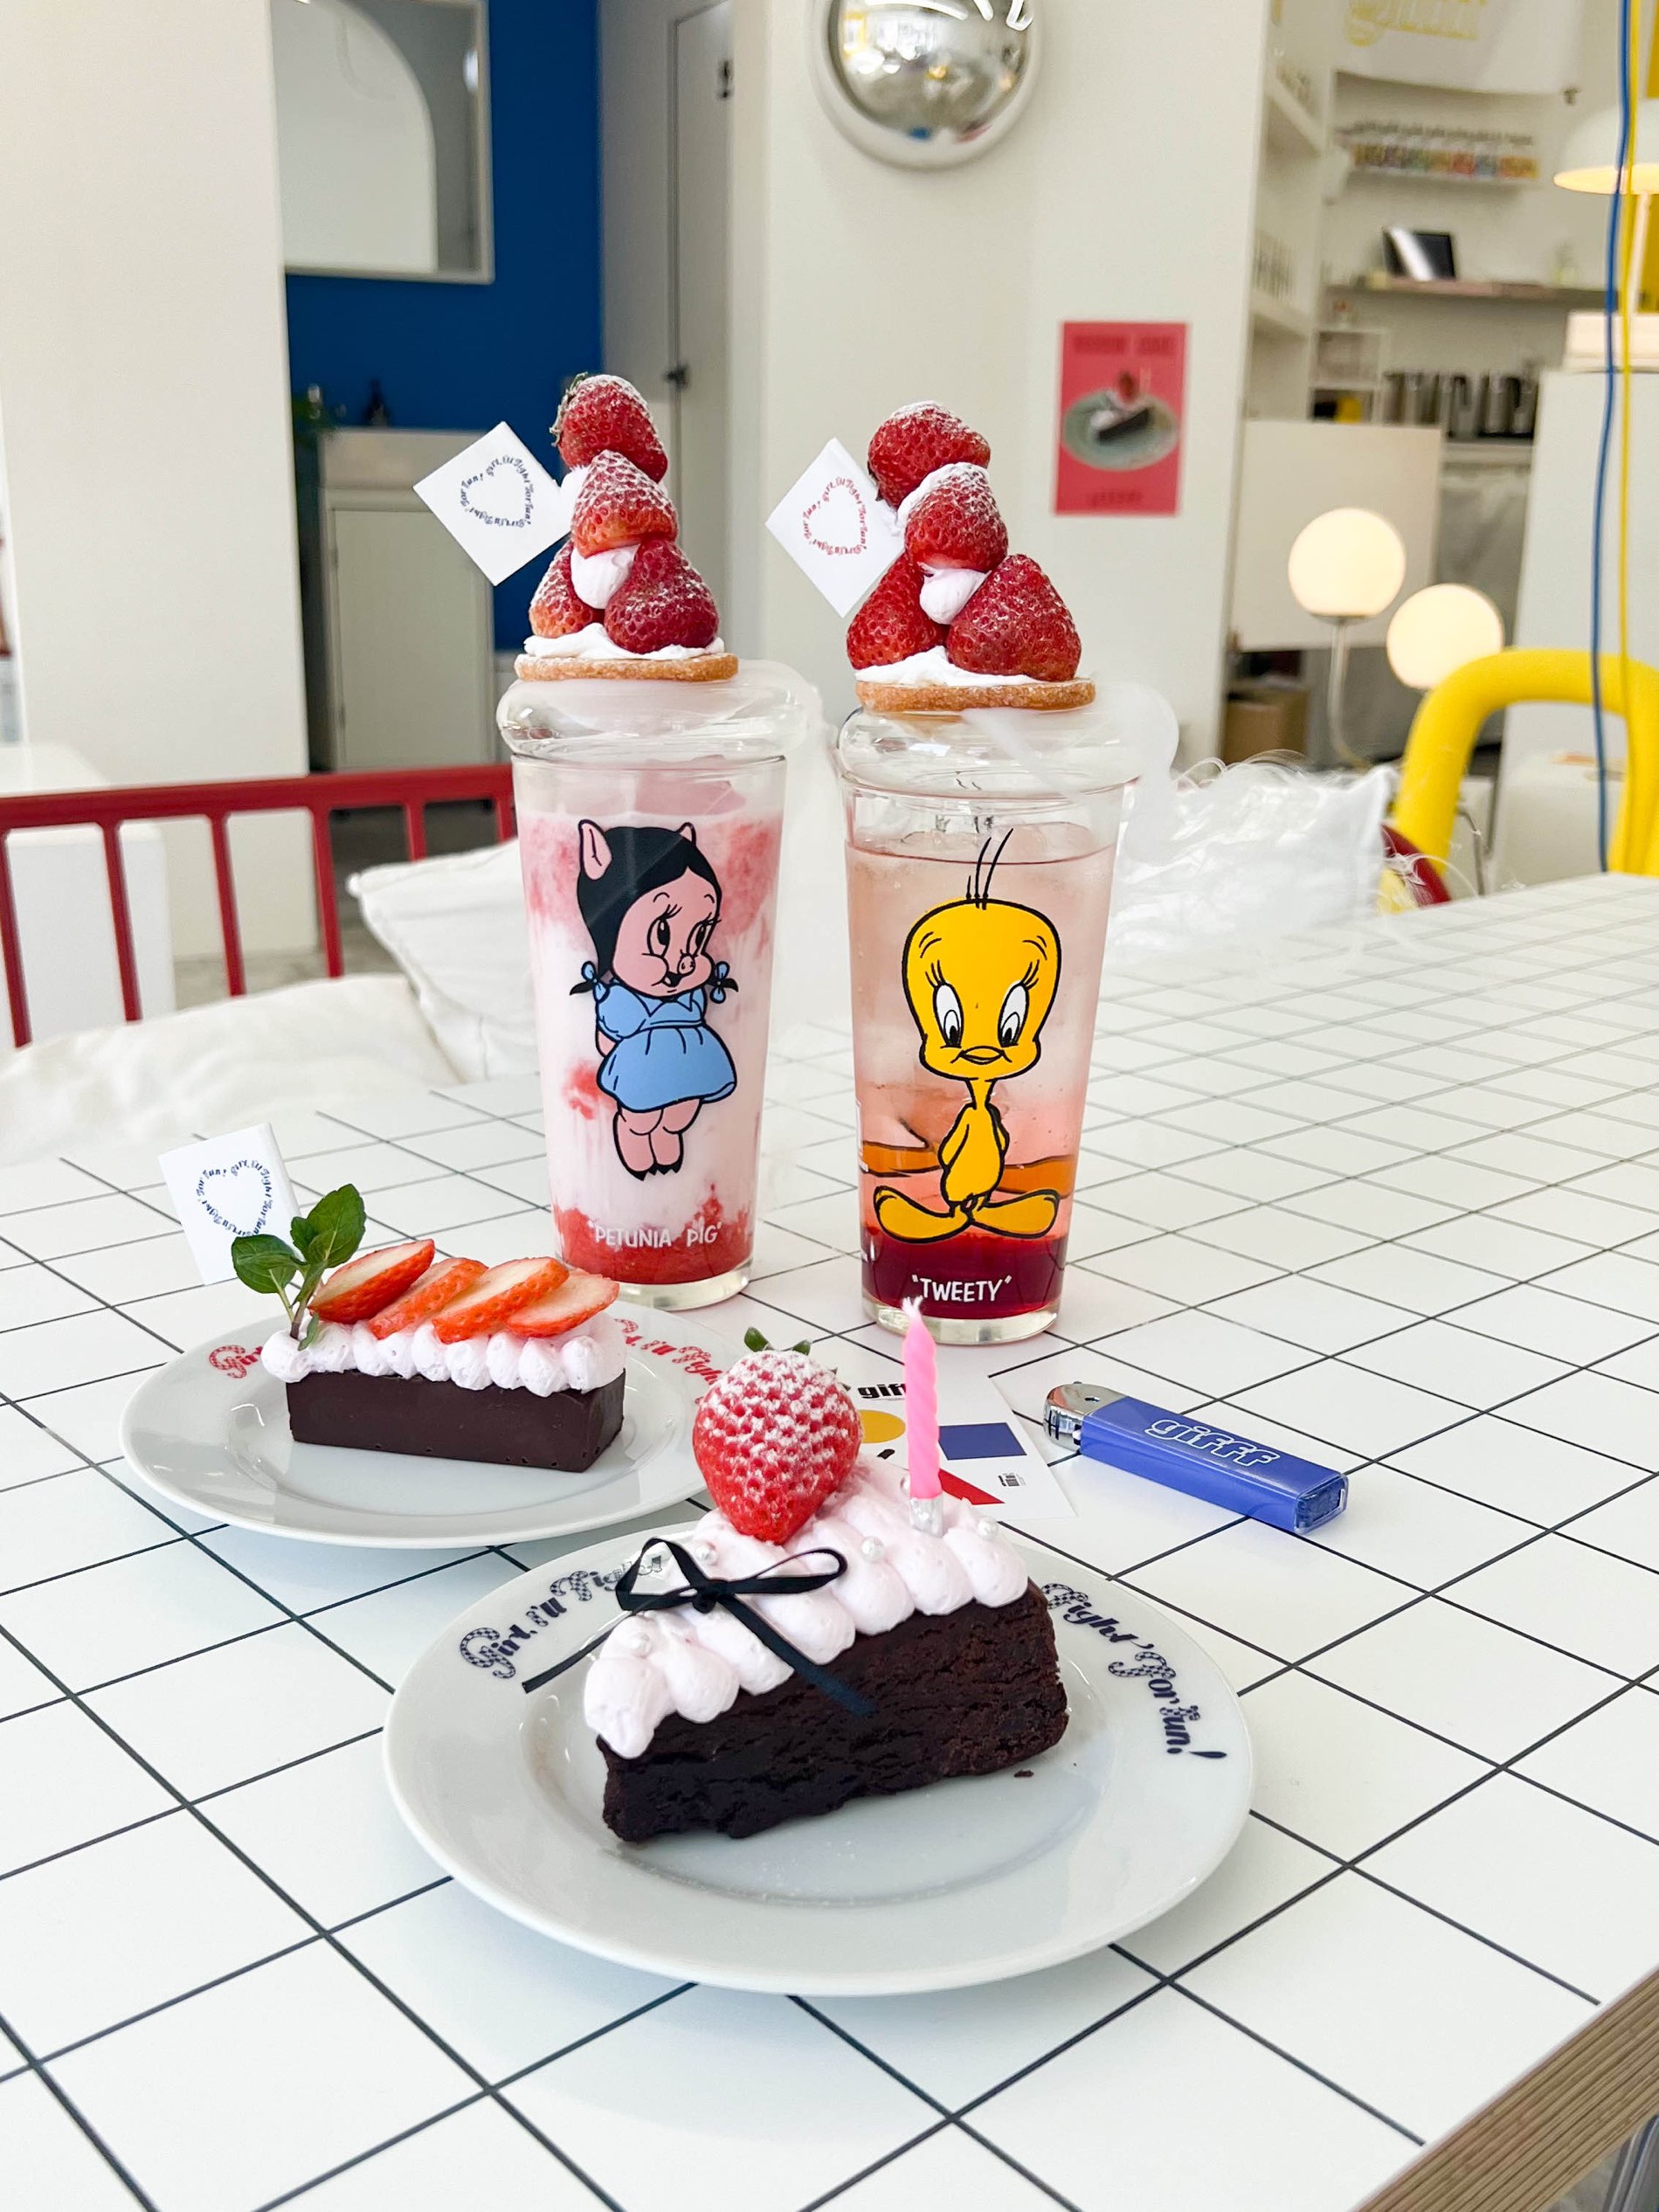 【北九州咖啡厅】草莓饮料和甜点太可爱了!